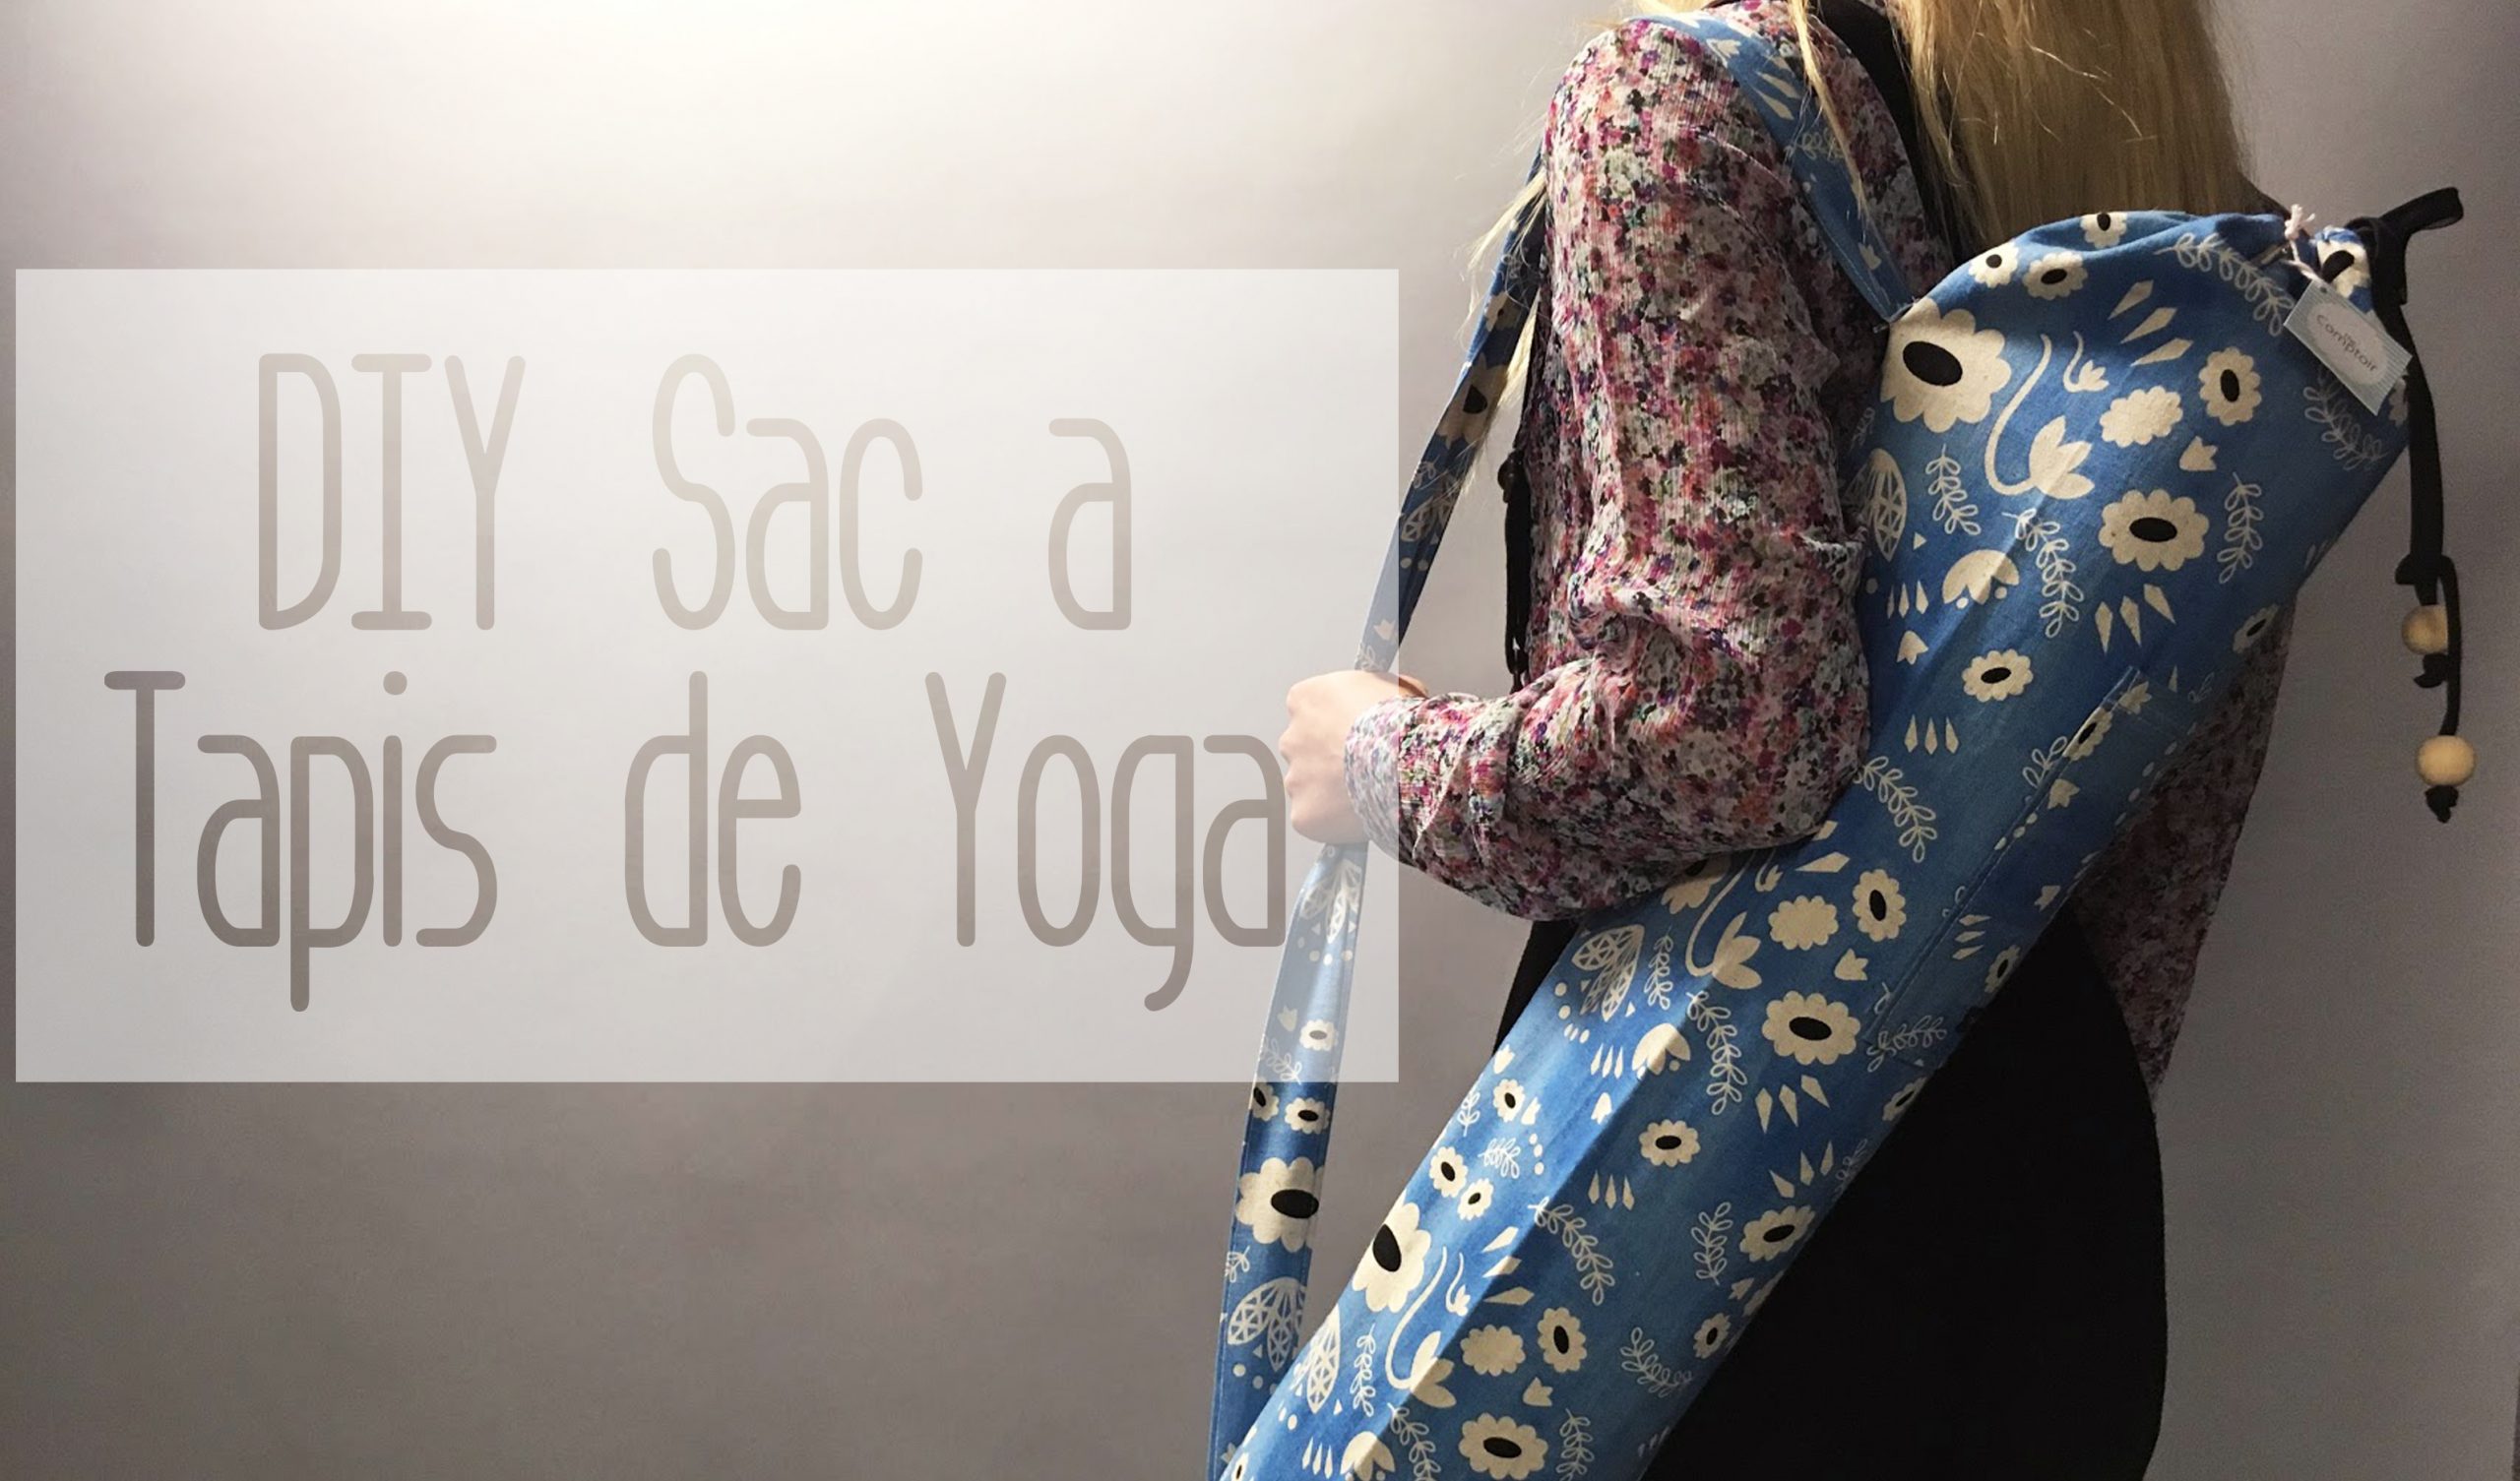 Retour des DIY couture : le sac à tapis de yoga – THE COMPTOIR